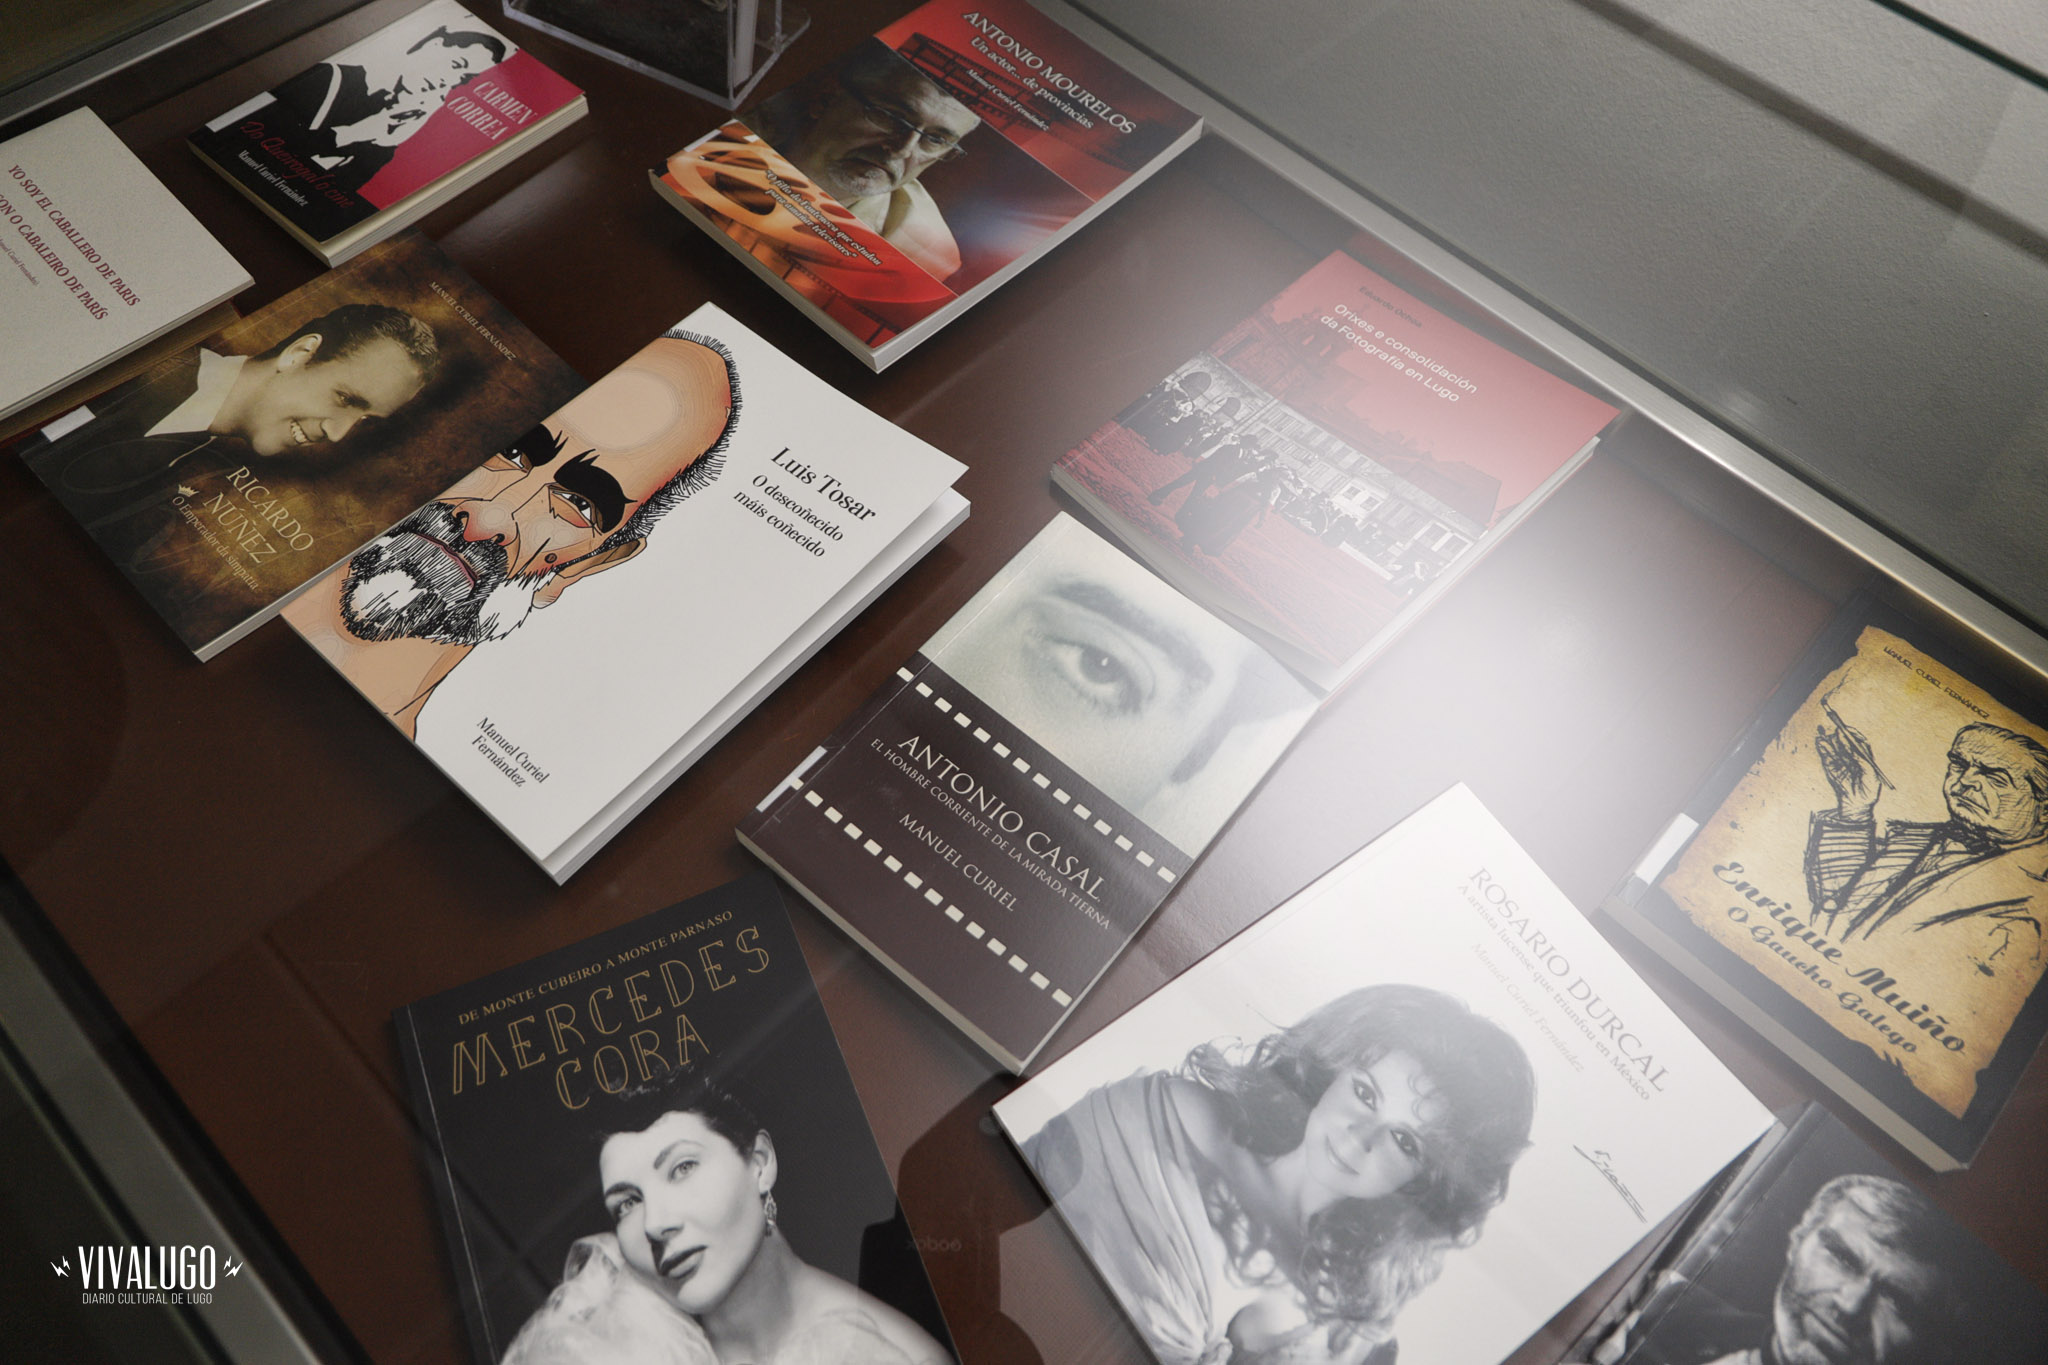 Inauguradas as exposicións "Luis Tosar" e "Libros da Semana de Cine"